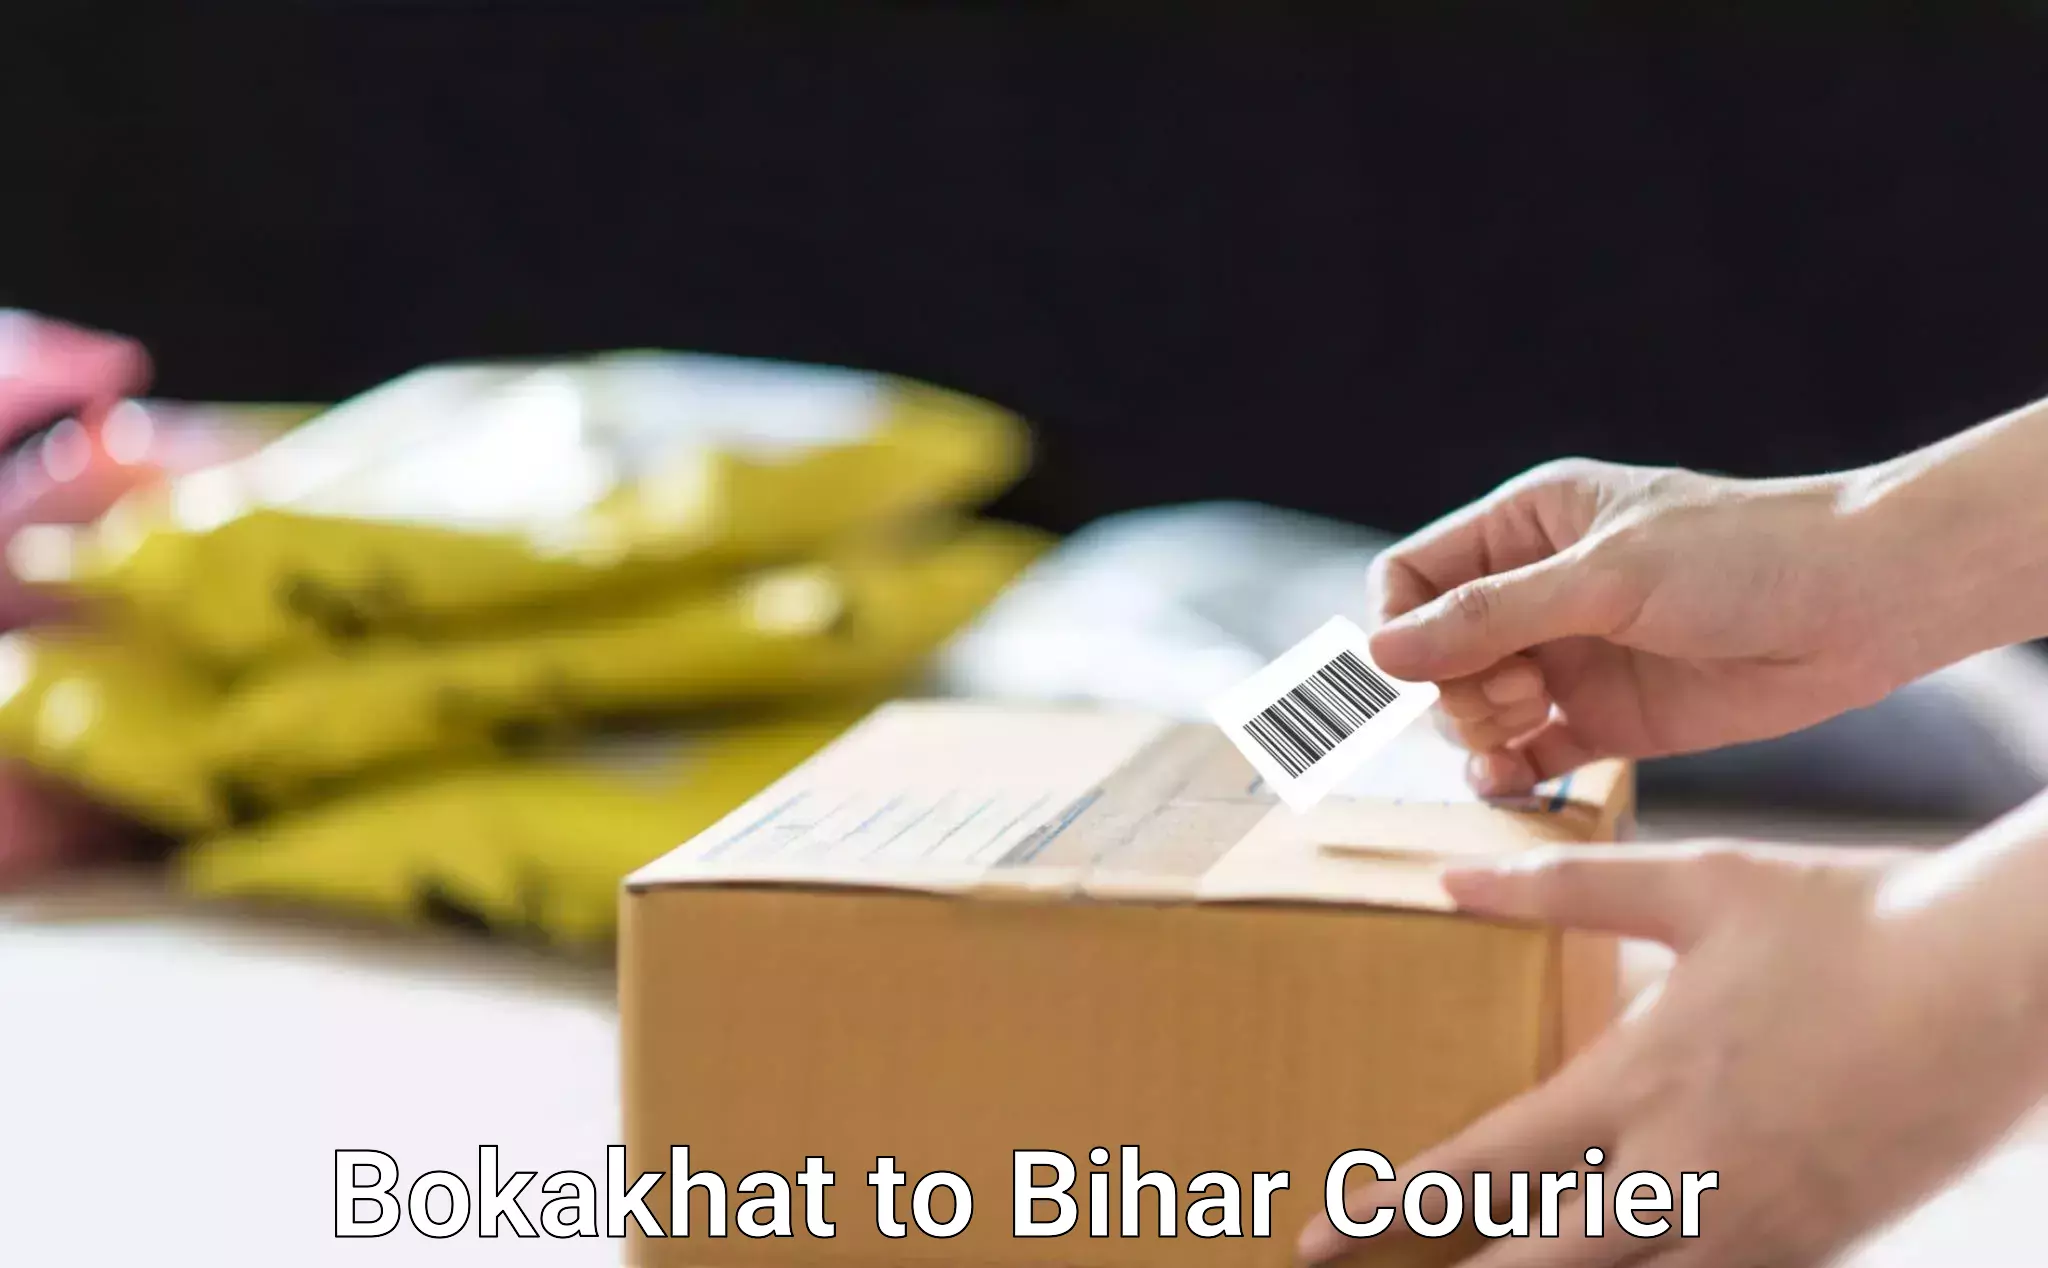 Customized delivery options in Bokakhat to Lalganj Vaishali